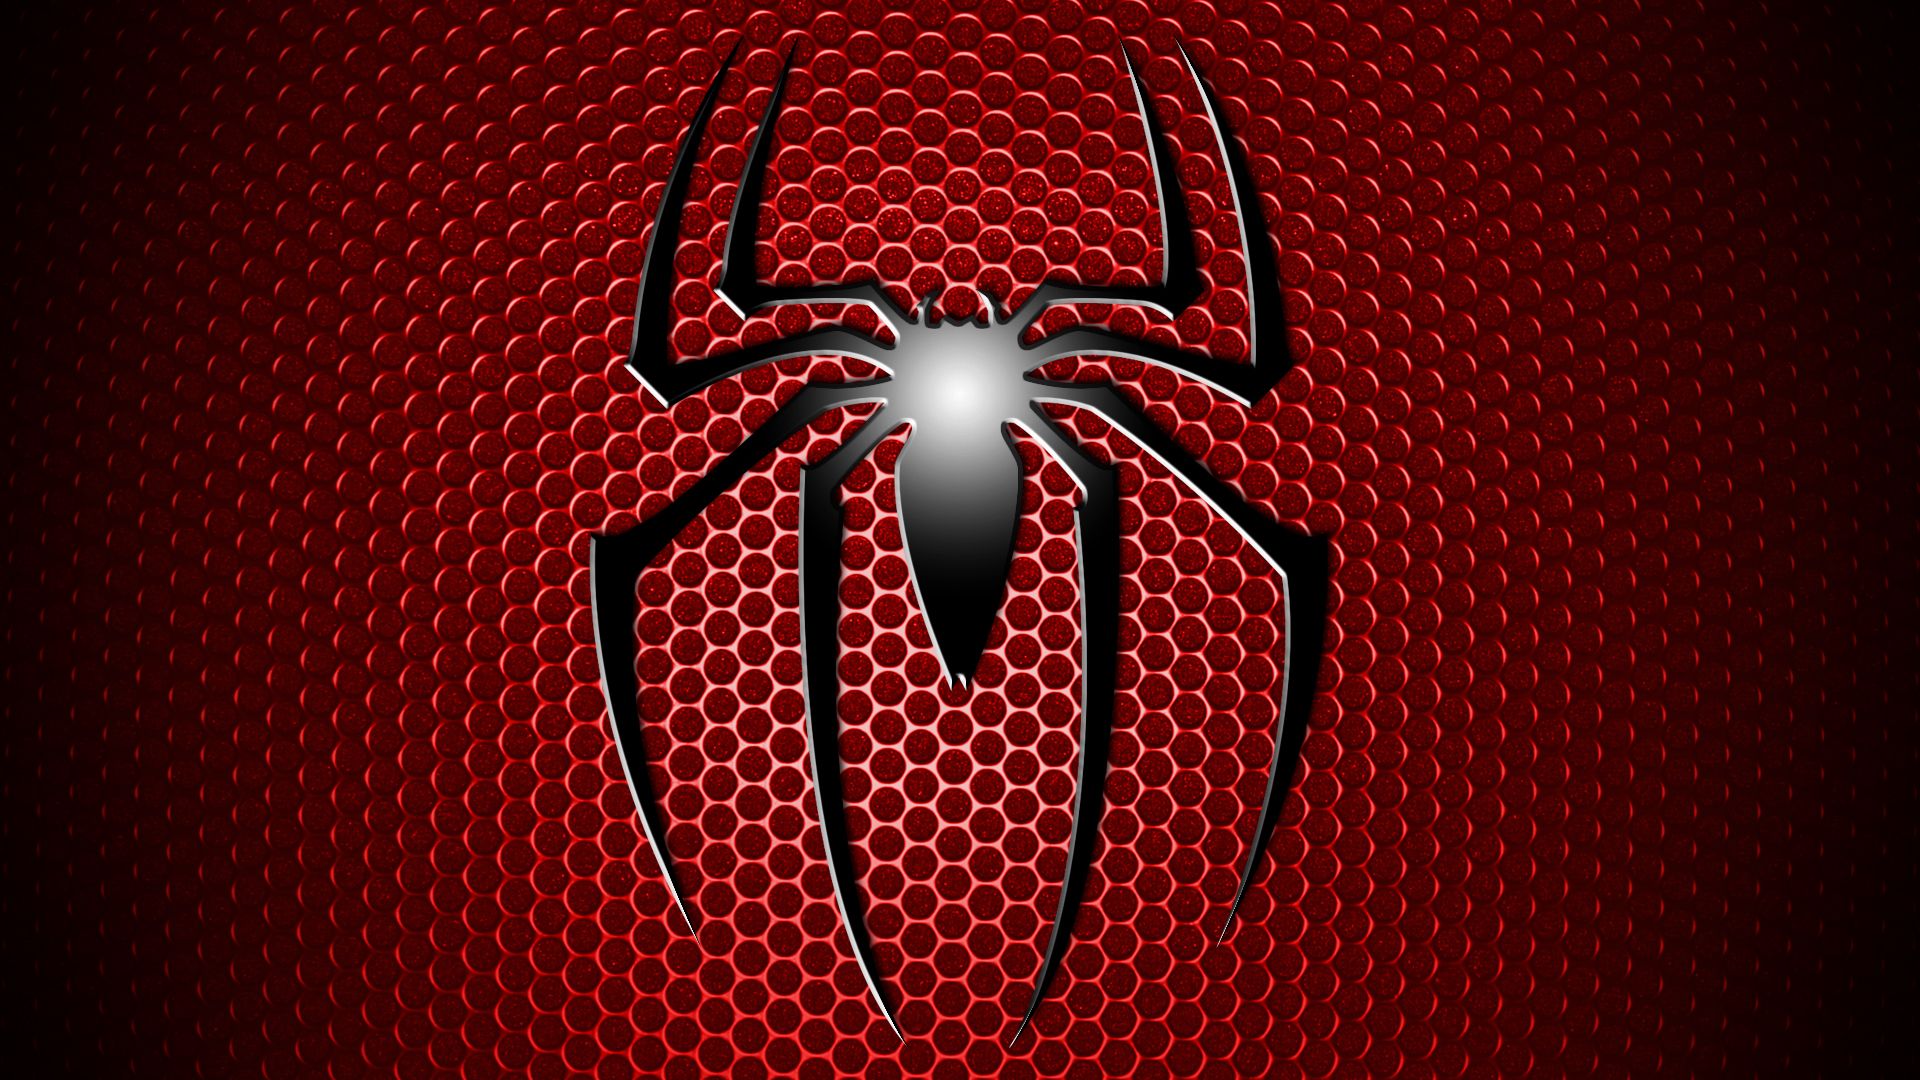 Spiderman Desktop Background. Spiderman